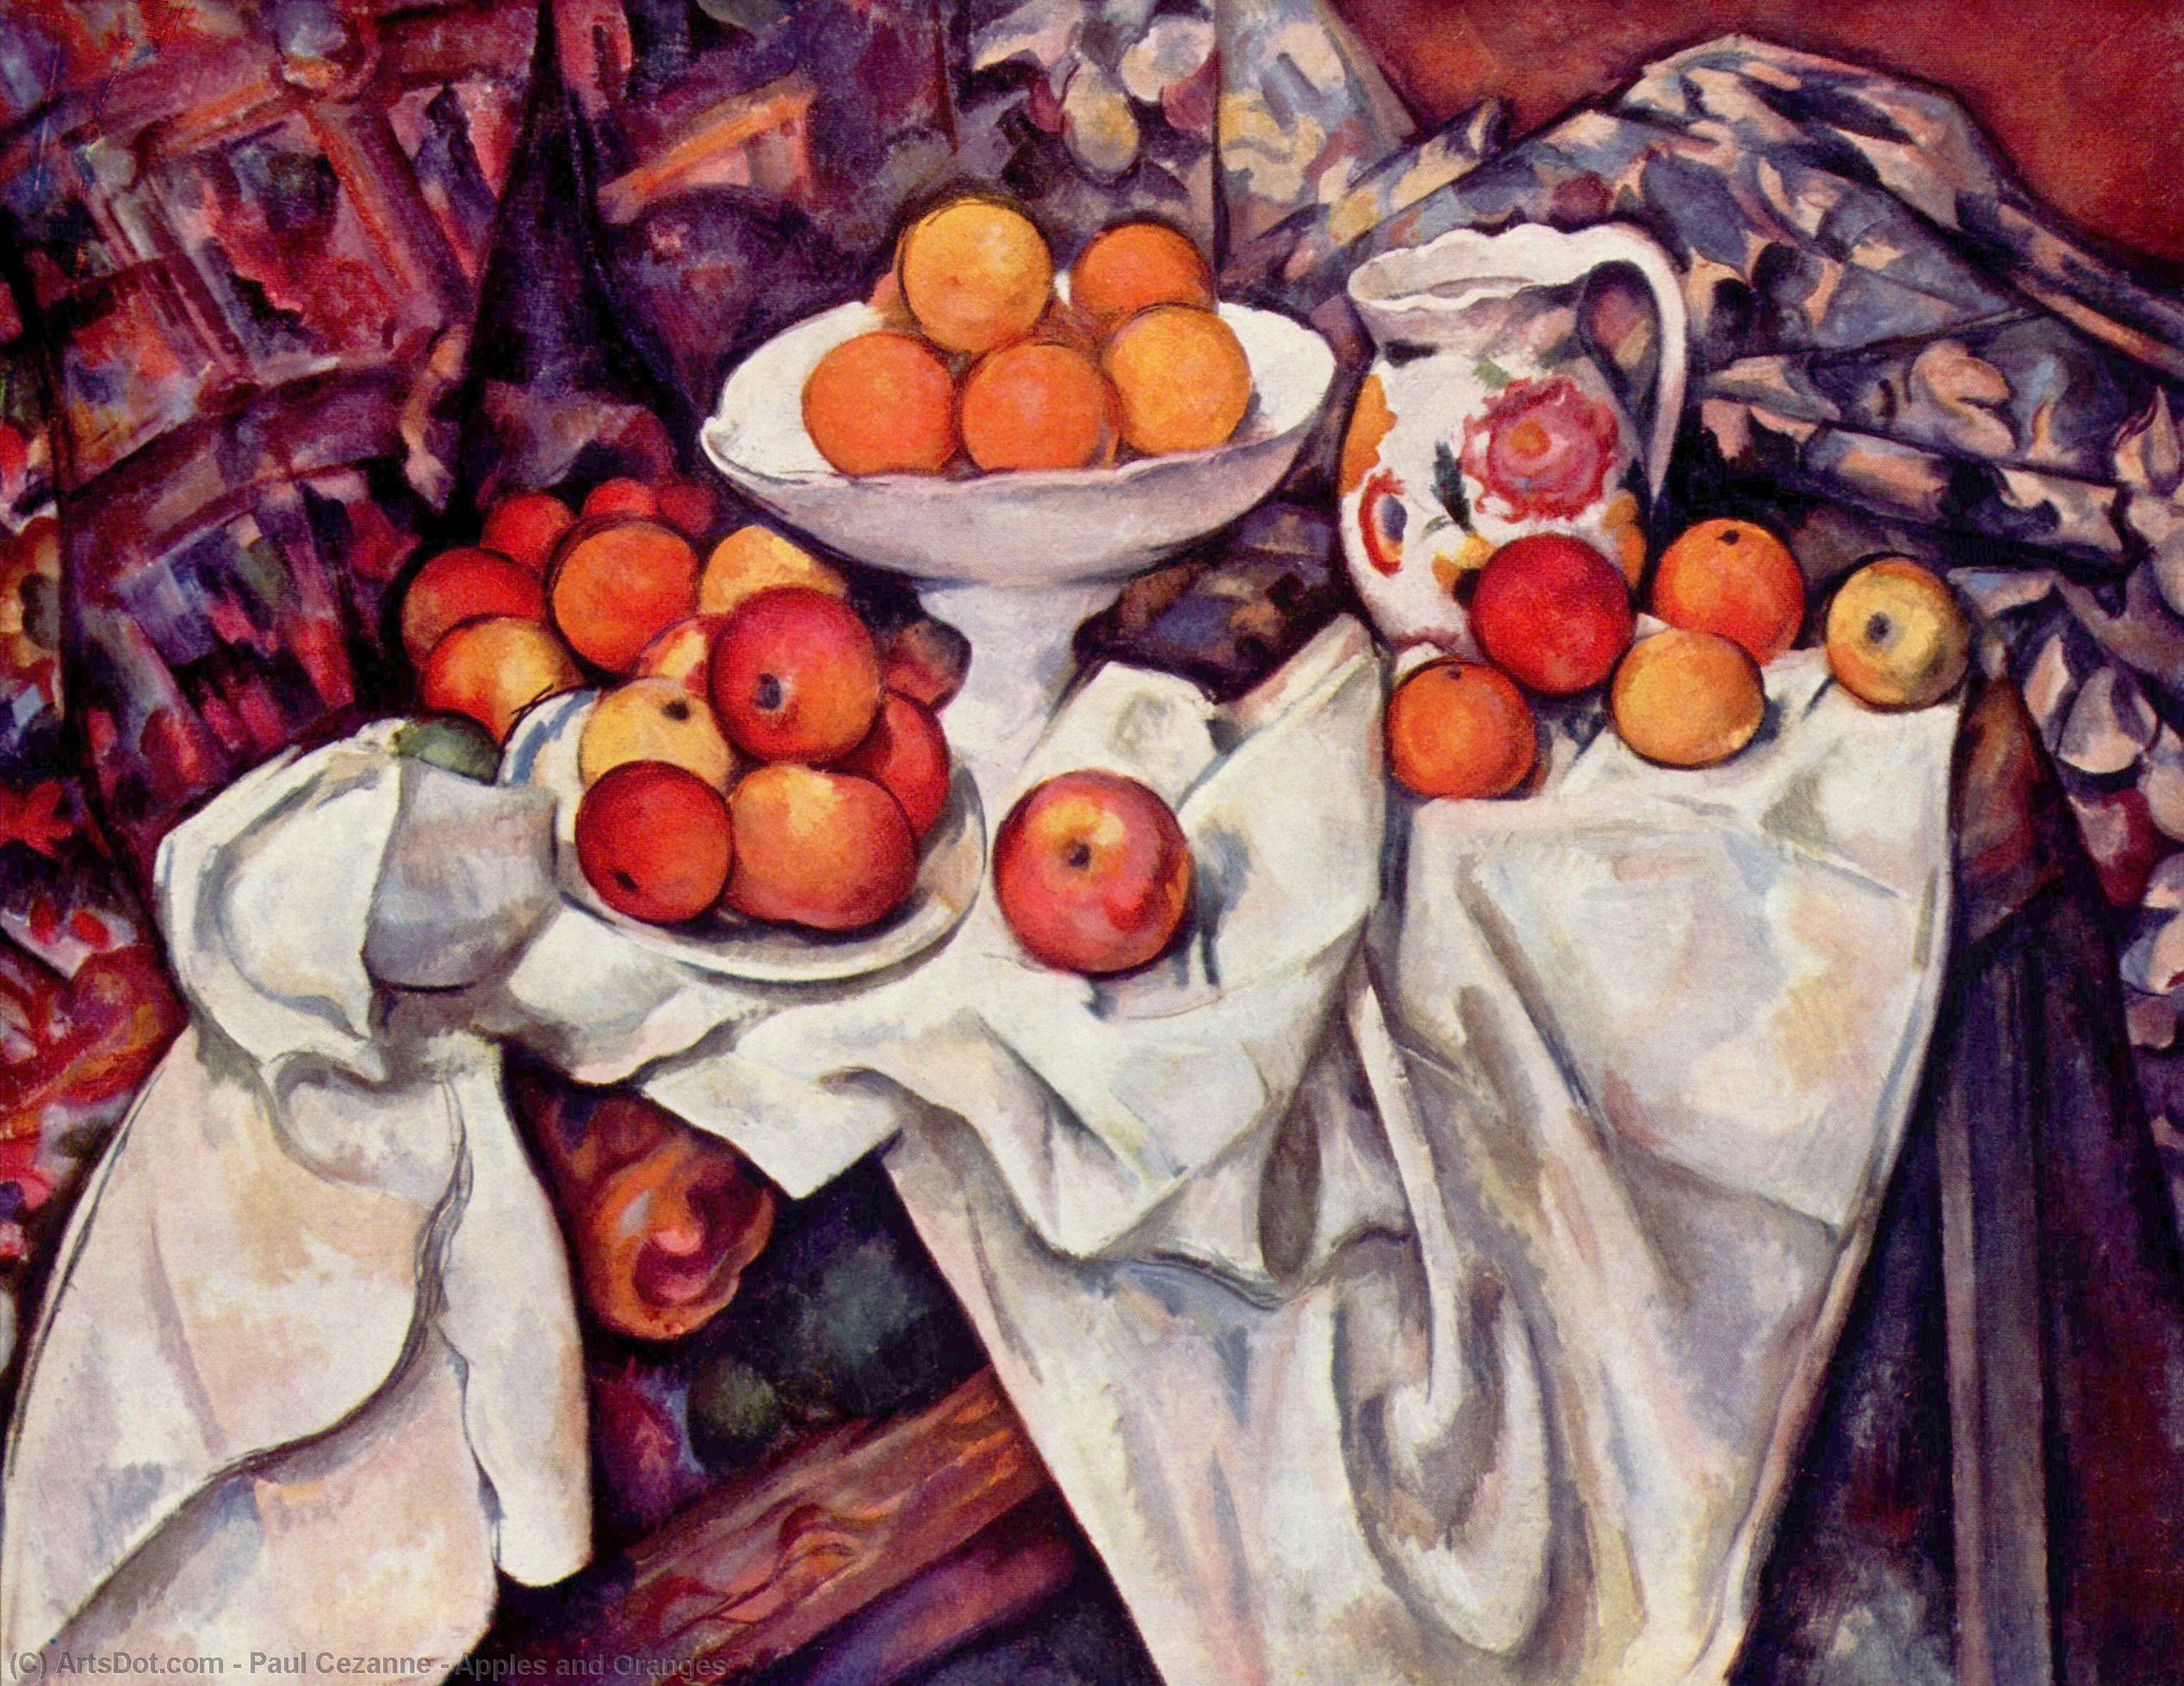 WikiOO.org - Εγκυκλοπαίδεια Καλών Τεχνών - Ζωγραφική, έργα τέχνης Paul Cezanne - Apples and Oranges